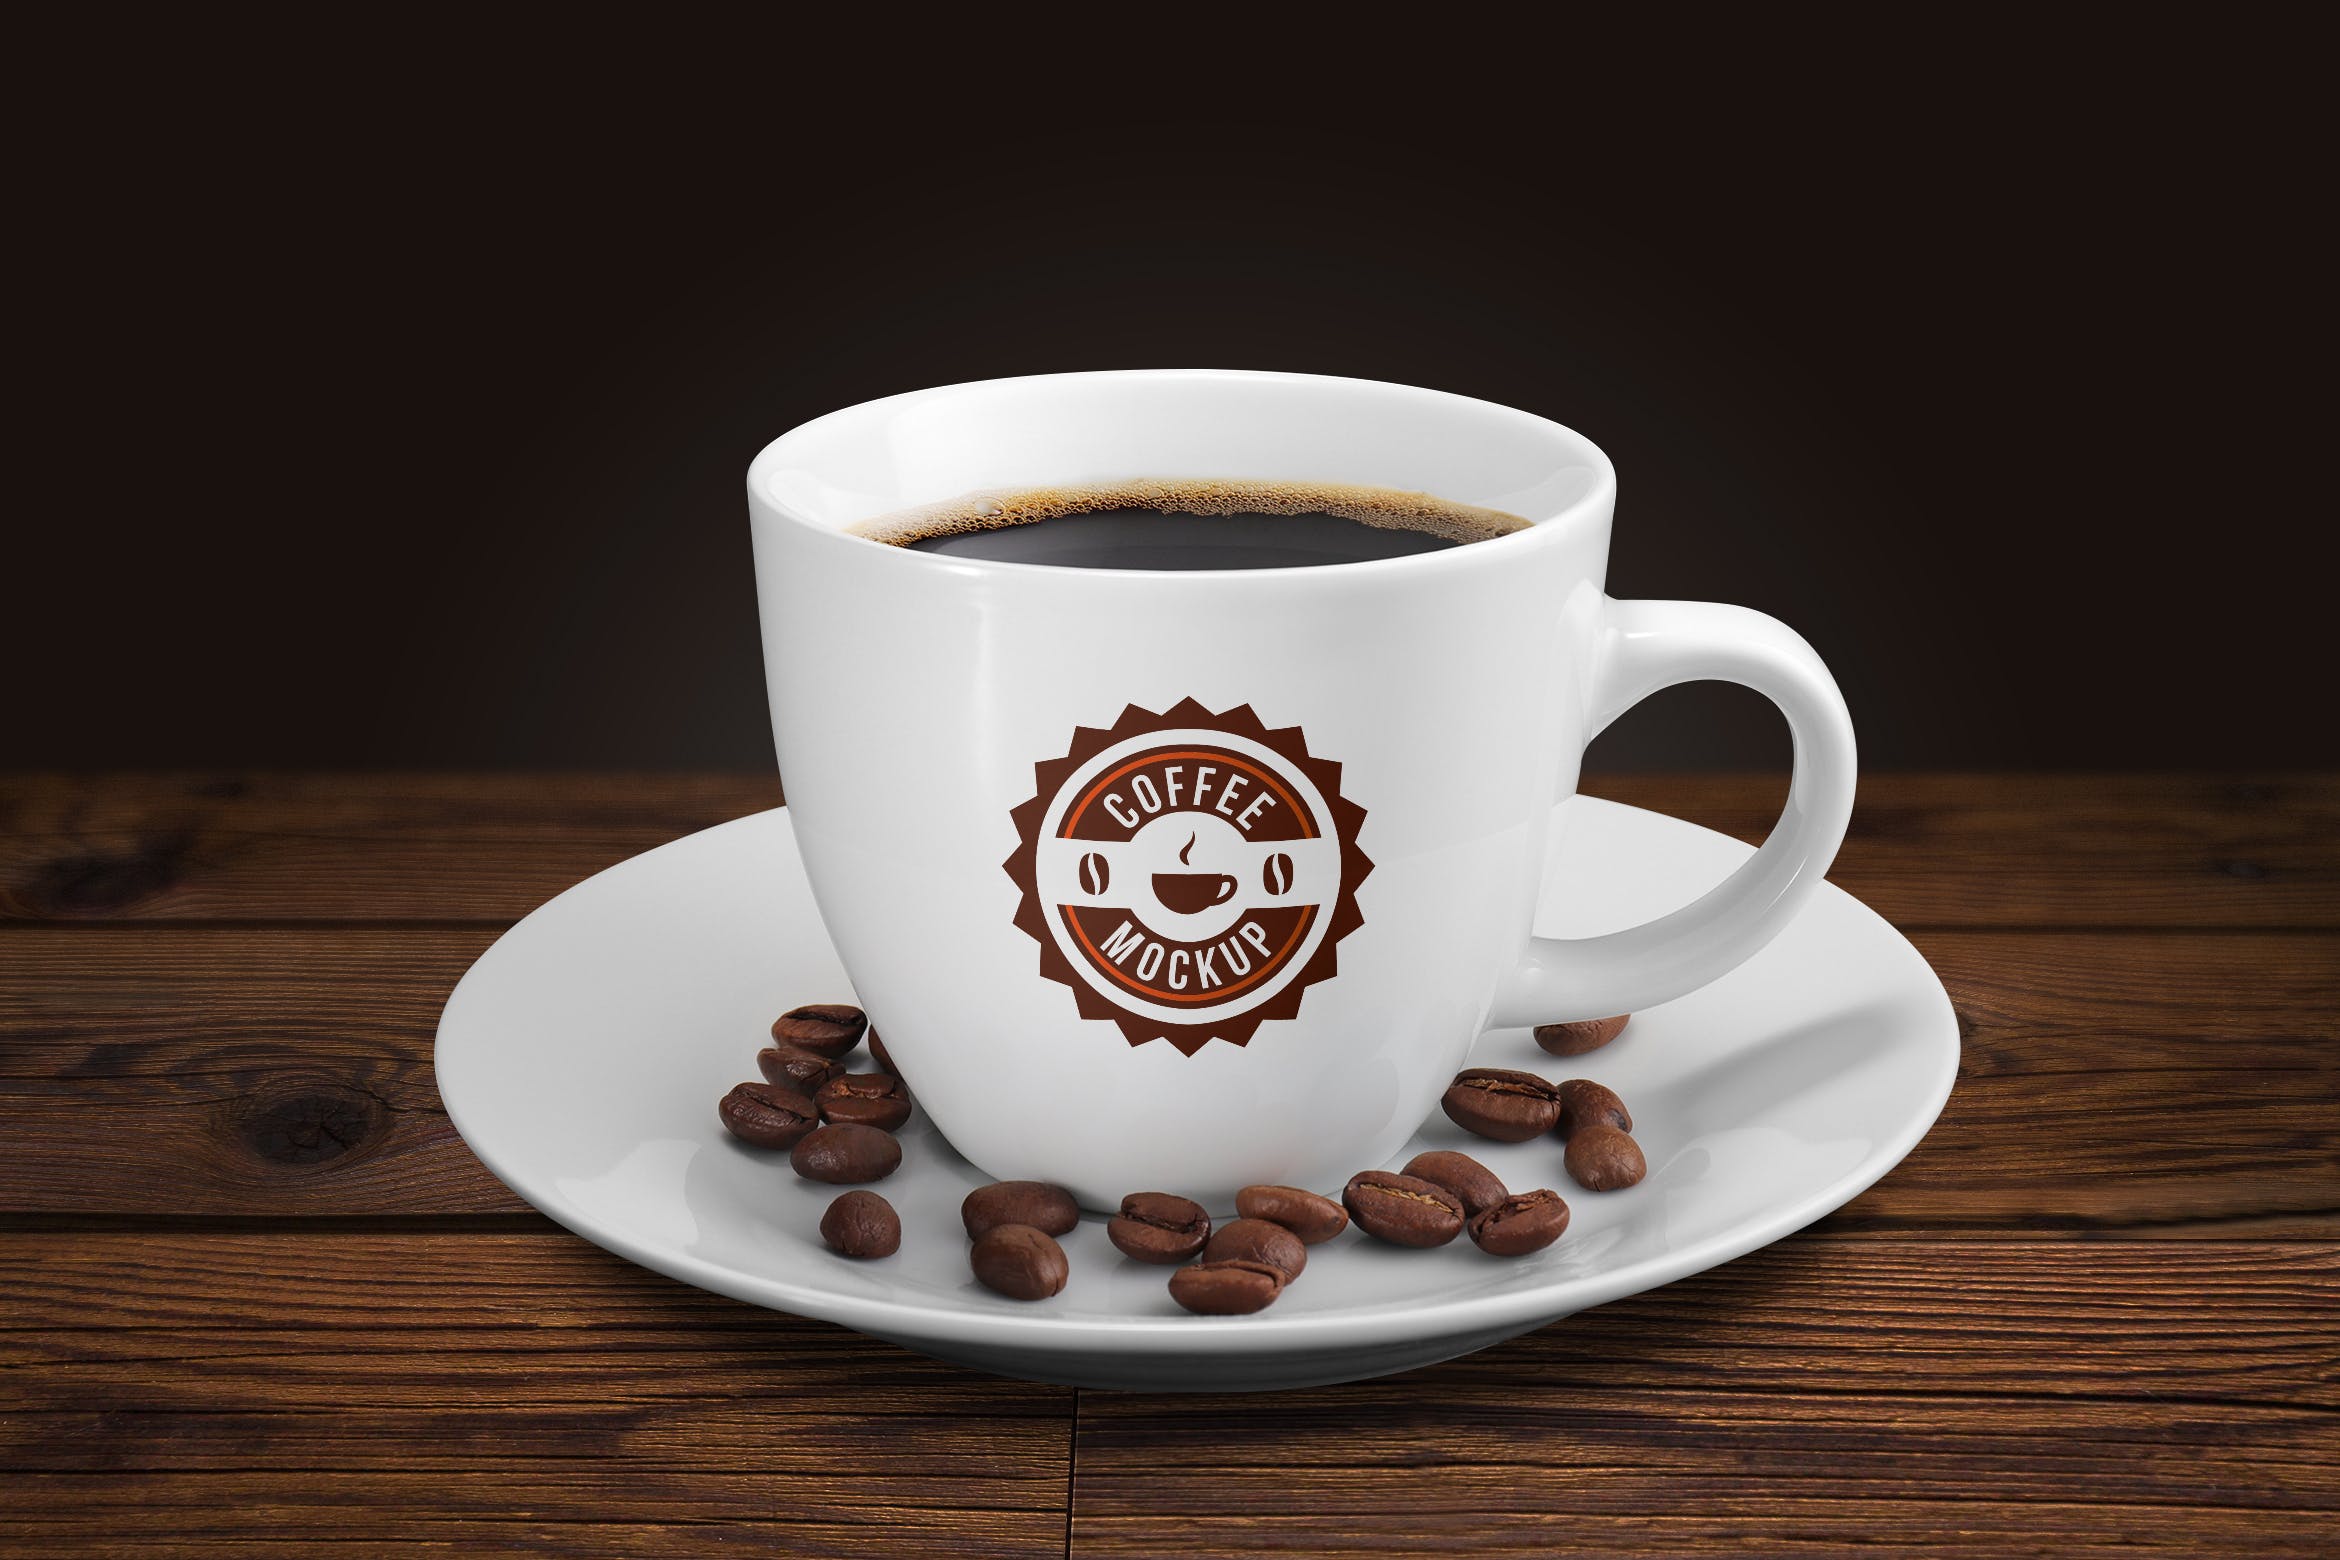 咖啡陶瓷杯咖啡品牌VI展示第一素材精选 Coffee cup mockup插图